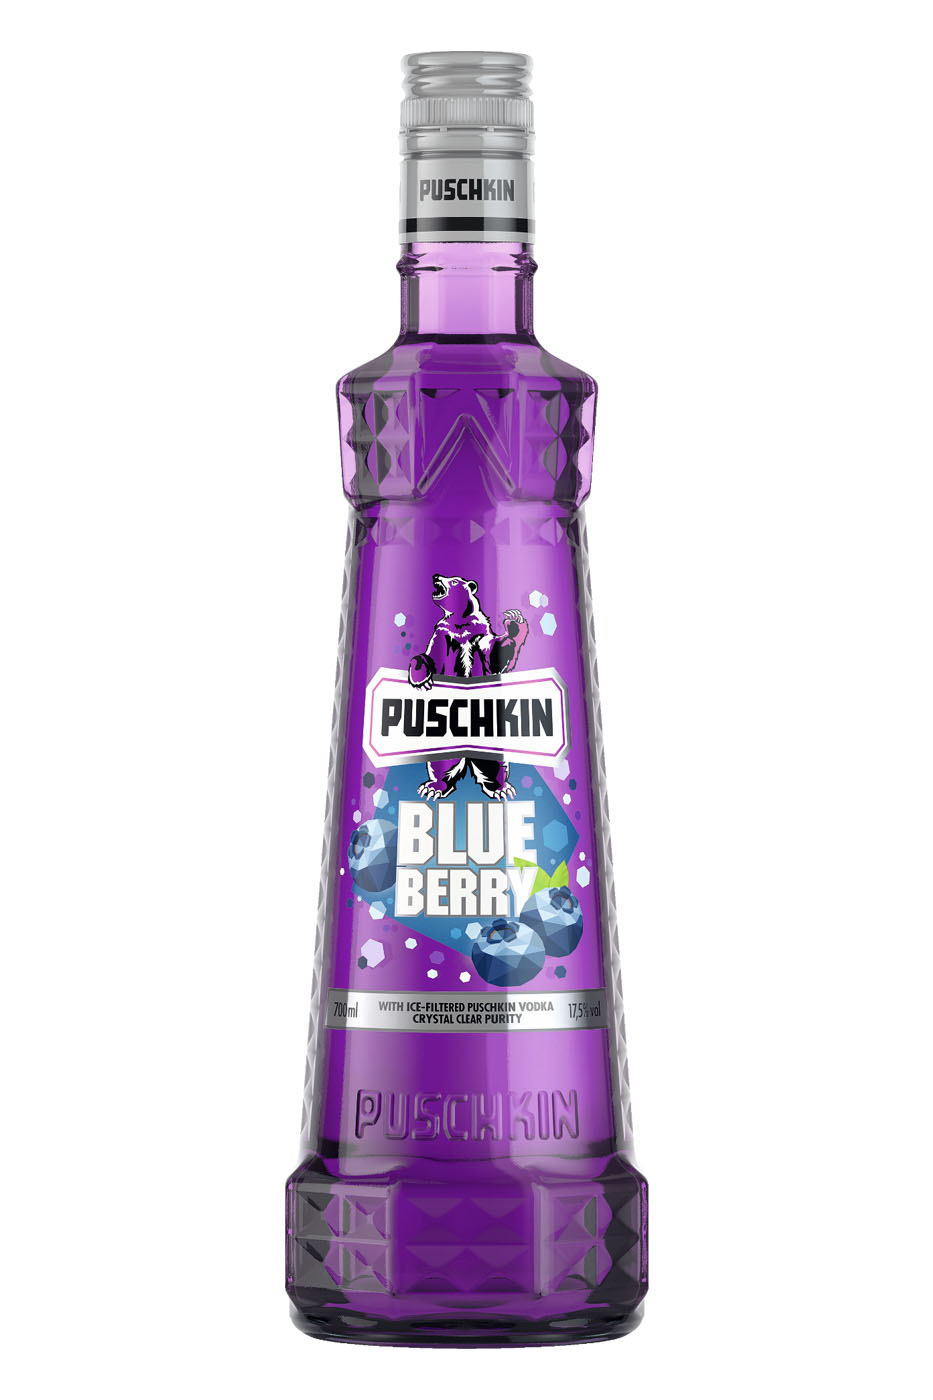 News: Puschkin Blueberry - Neuer Handel – Likör erreicht